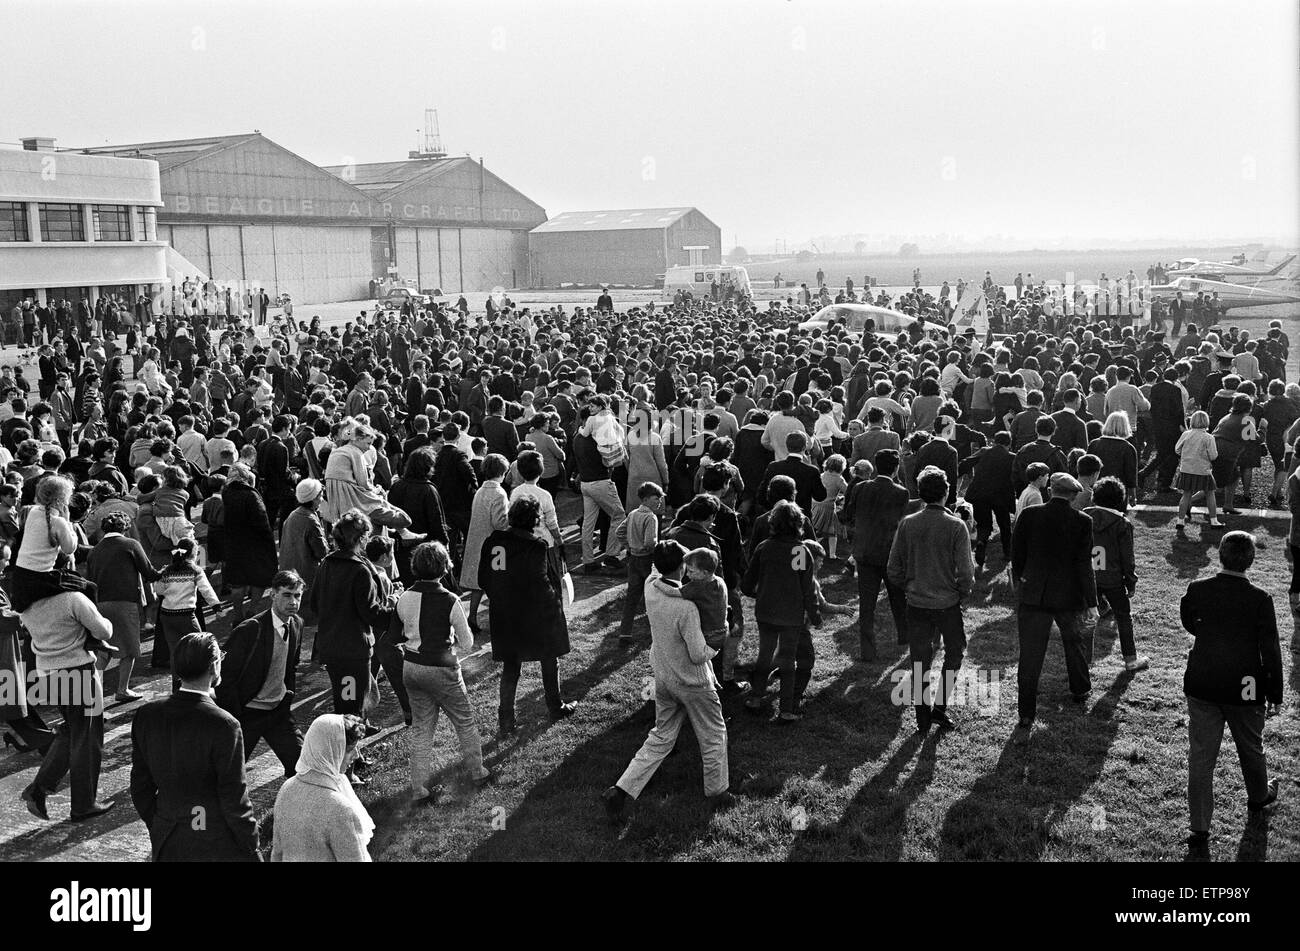 Riesige Menschenmengen begrüßen die Ankunft des Manchester Popgruppe The Hollies Flughafen Shoreham nach ihrem Auftritt in einem Pop-Festival im Wembley-Stadion.  26. April 1964. Stockfoto